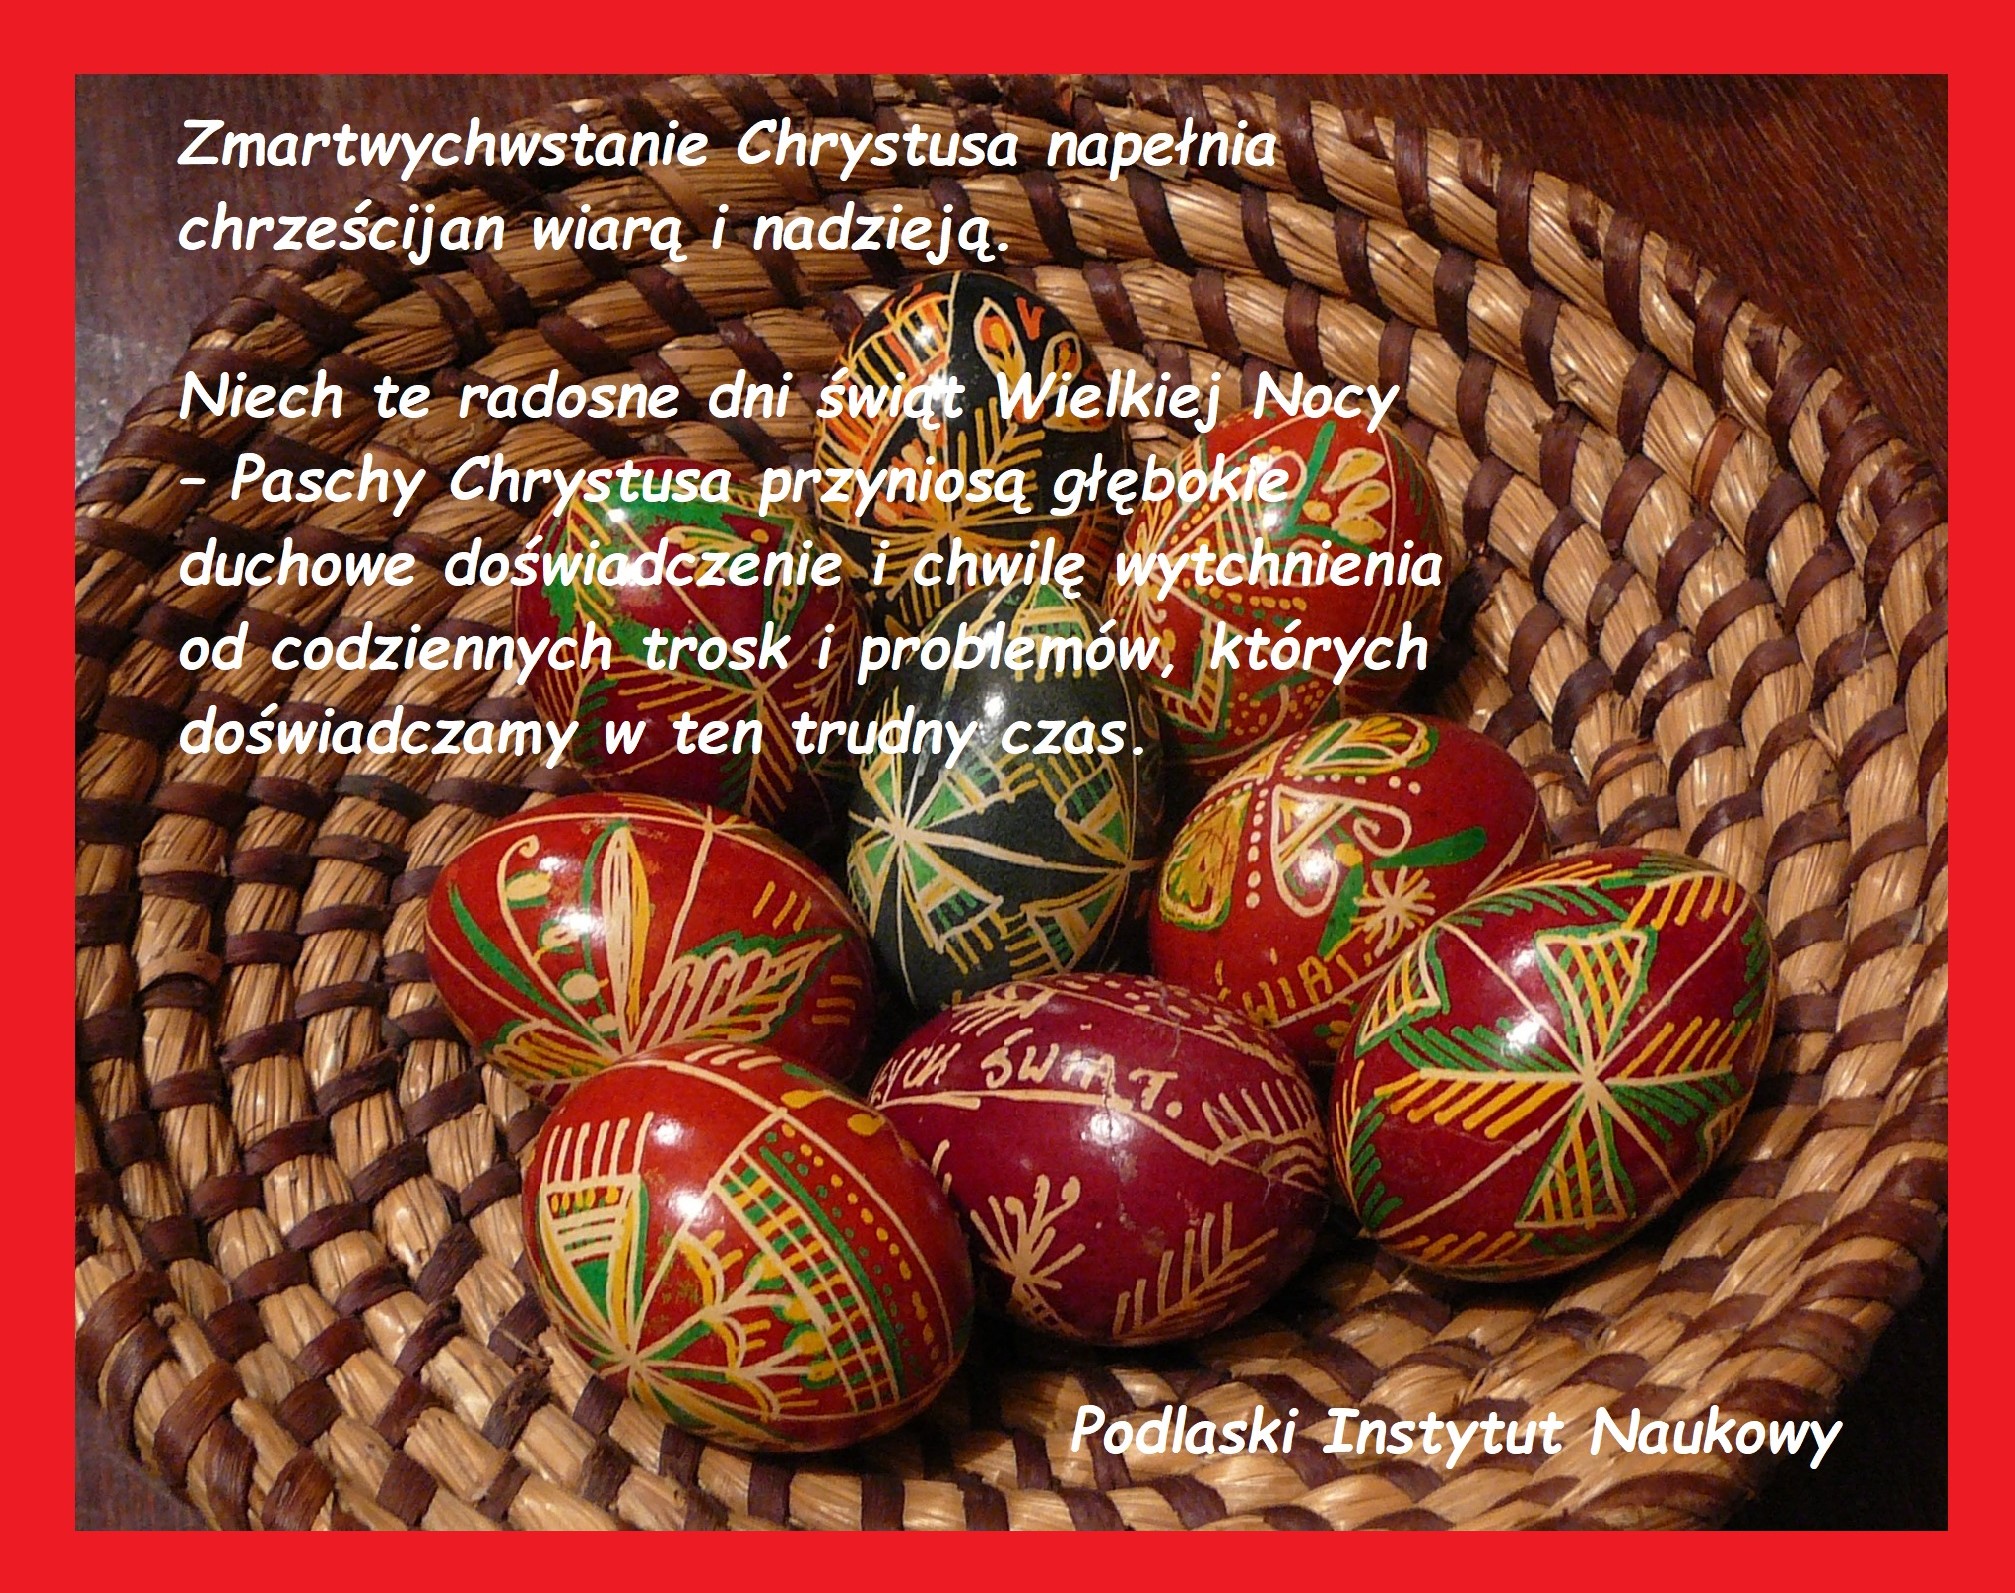 Radosnych i spokojnych świąt Wielkanocy